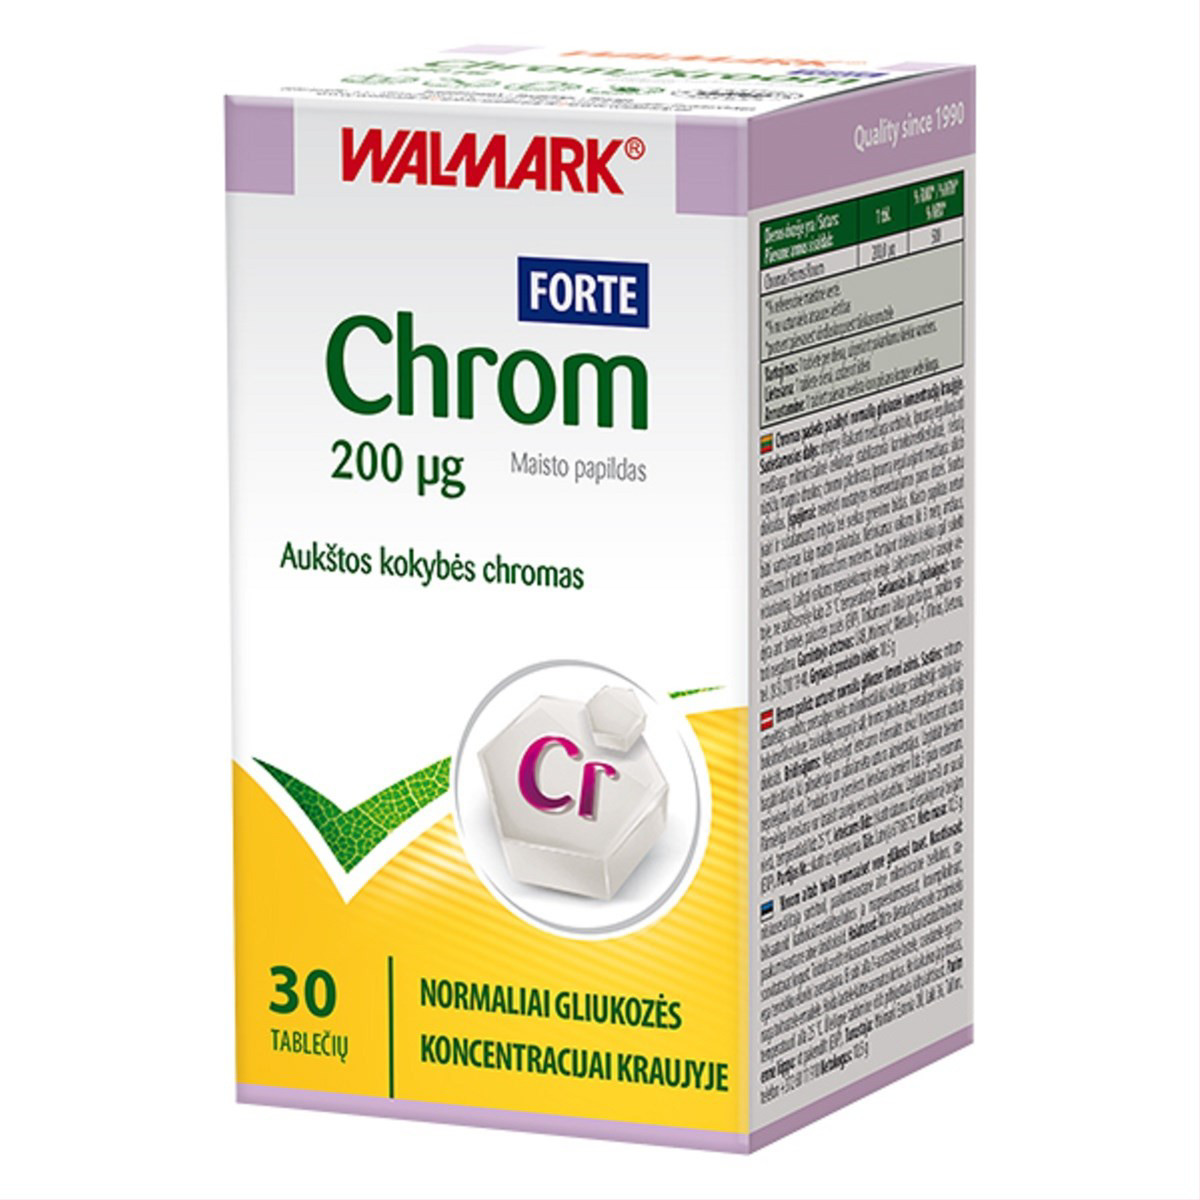 WALMARK CHROM FORTE, 200 µg, 30 tablečių